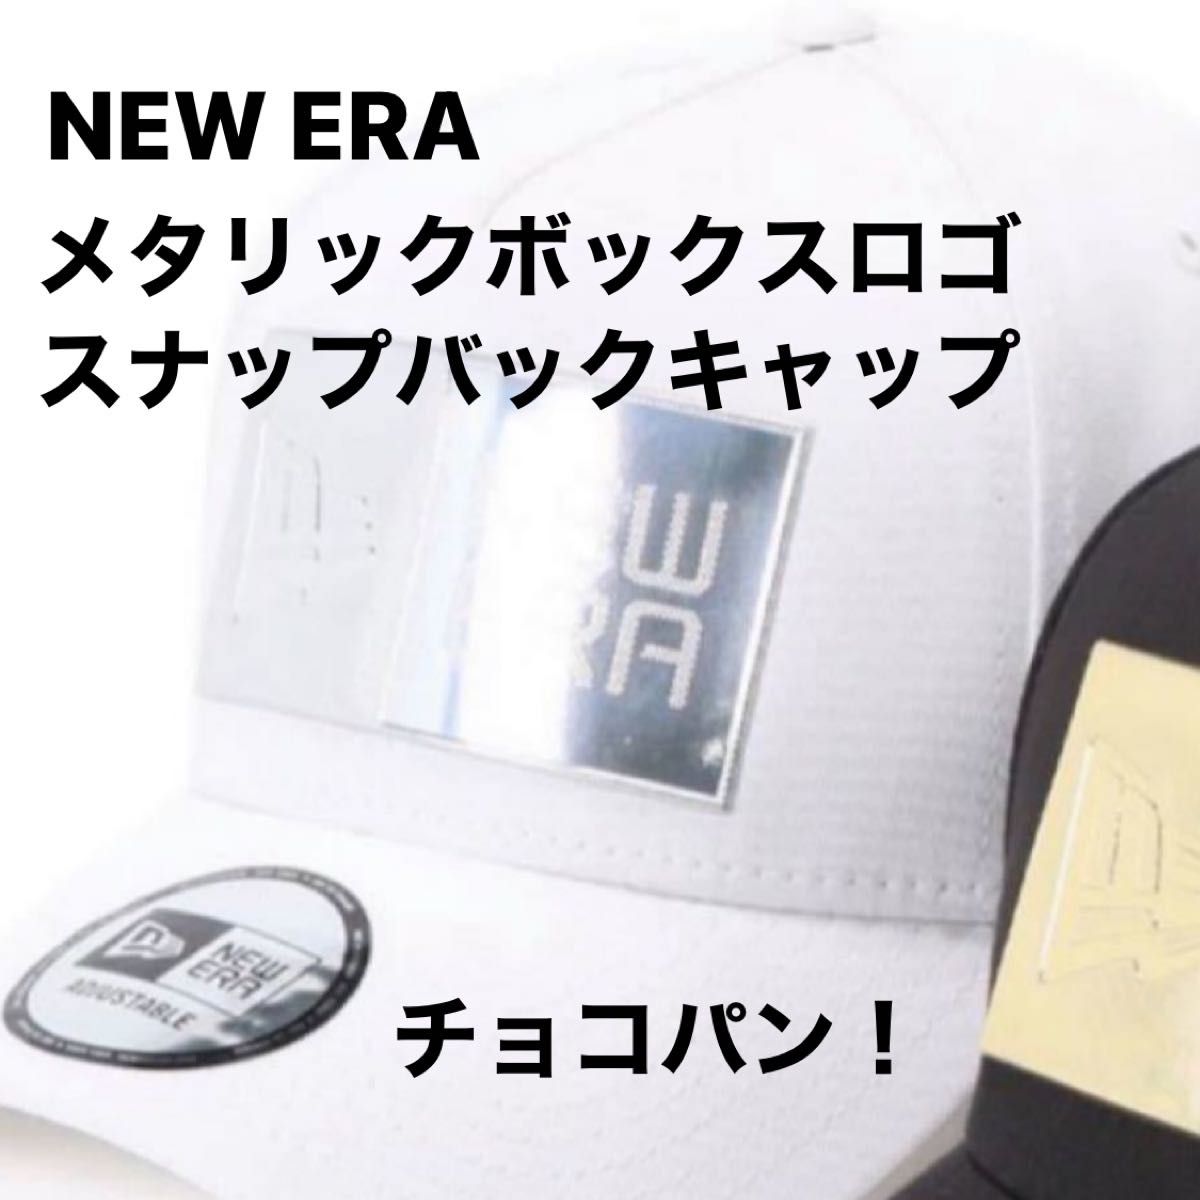 ラス1！NEW ERA ニューエラ メタリックボックスロゴ スナップバックキャップ 新品 キャップ帽子 ホワイト 完売品！